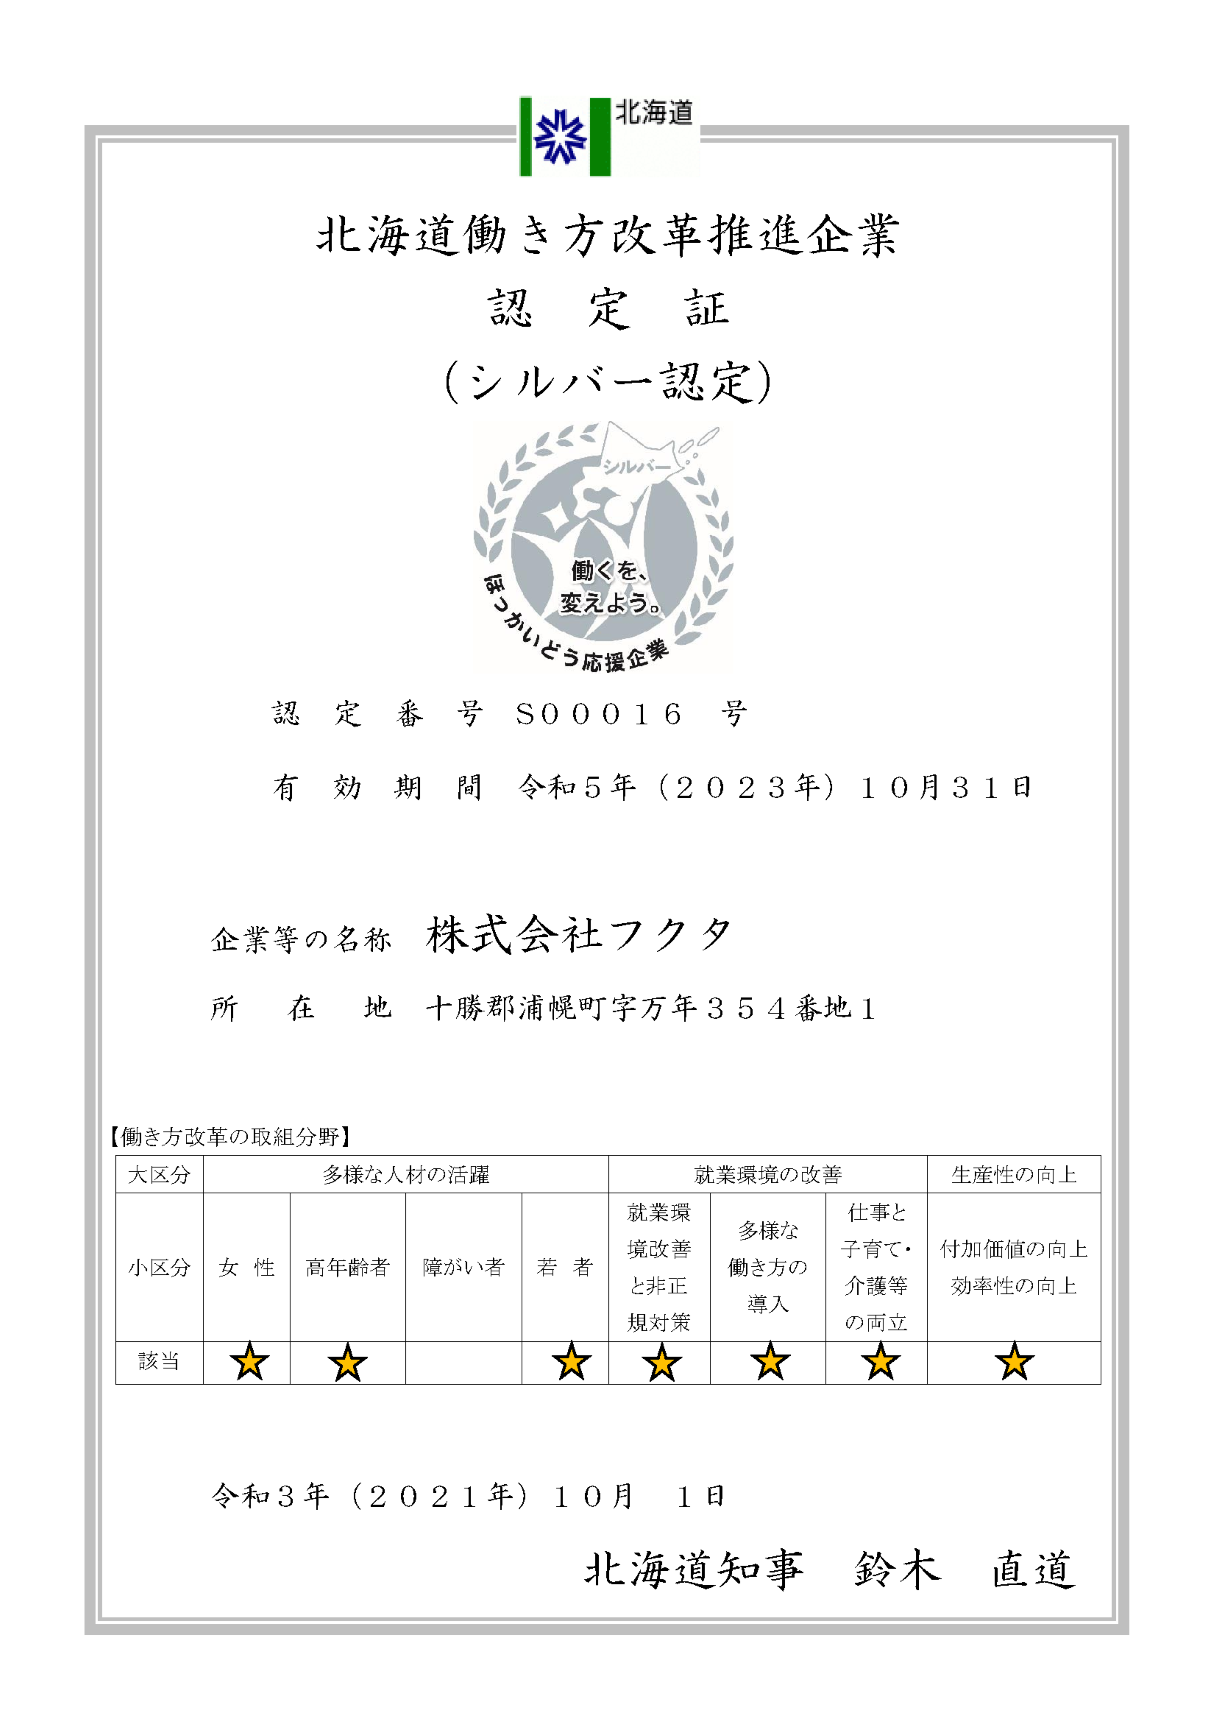 「北海道働き方改革推進企業　シルバー認定」を更新しました